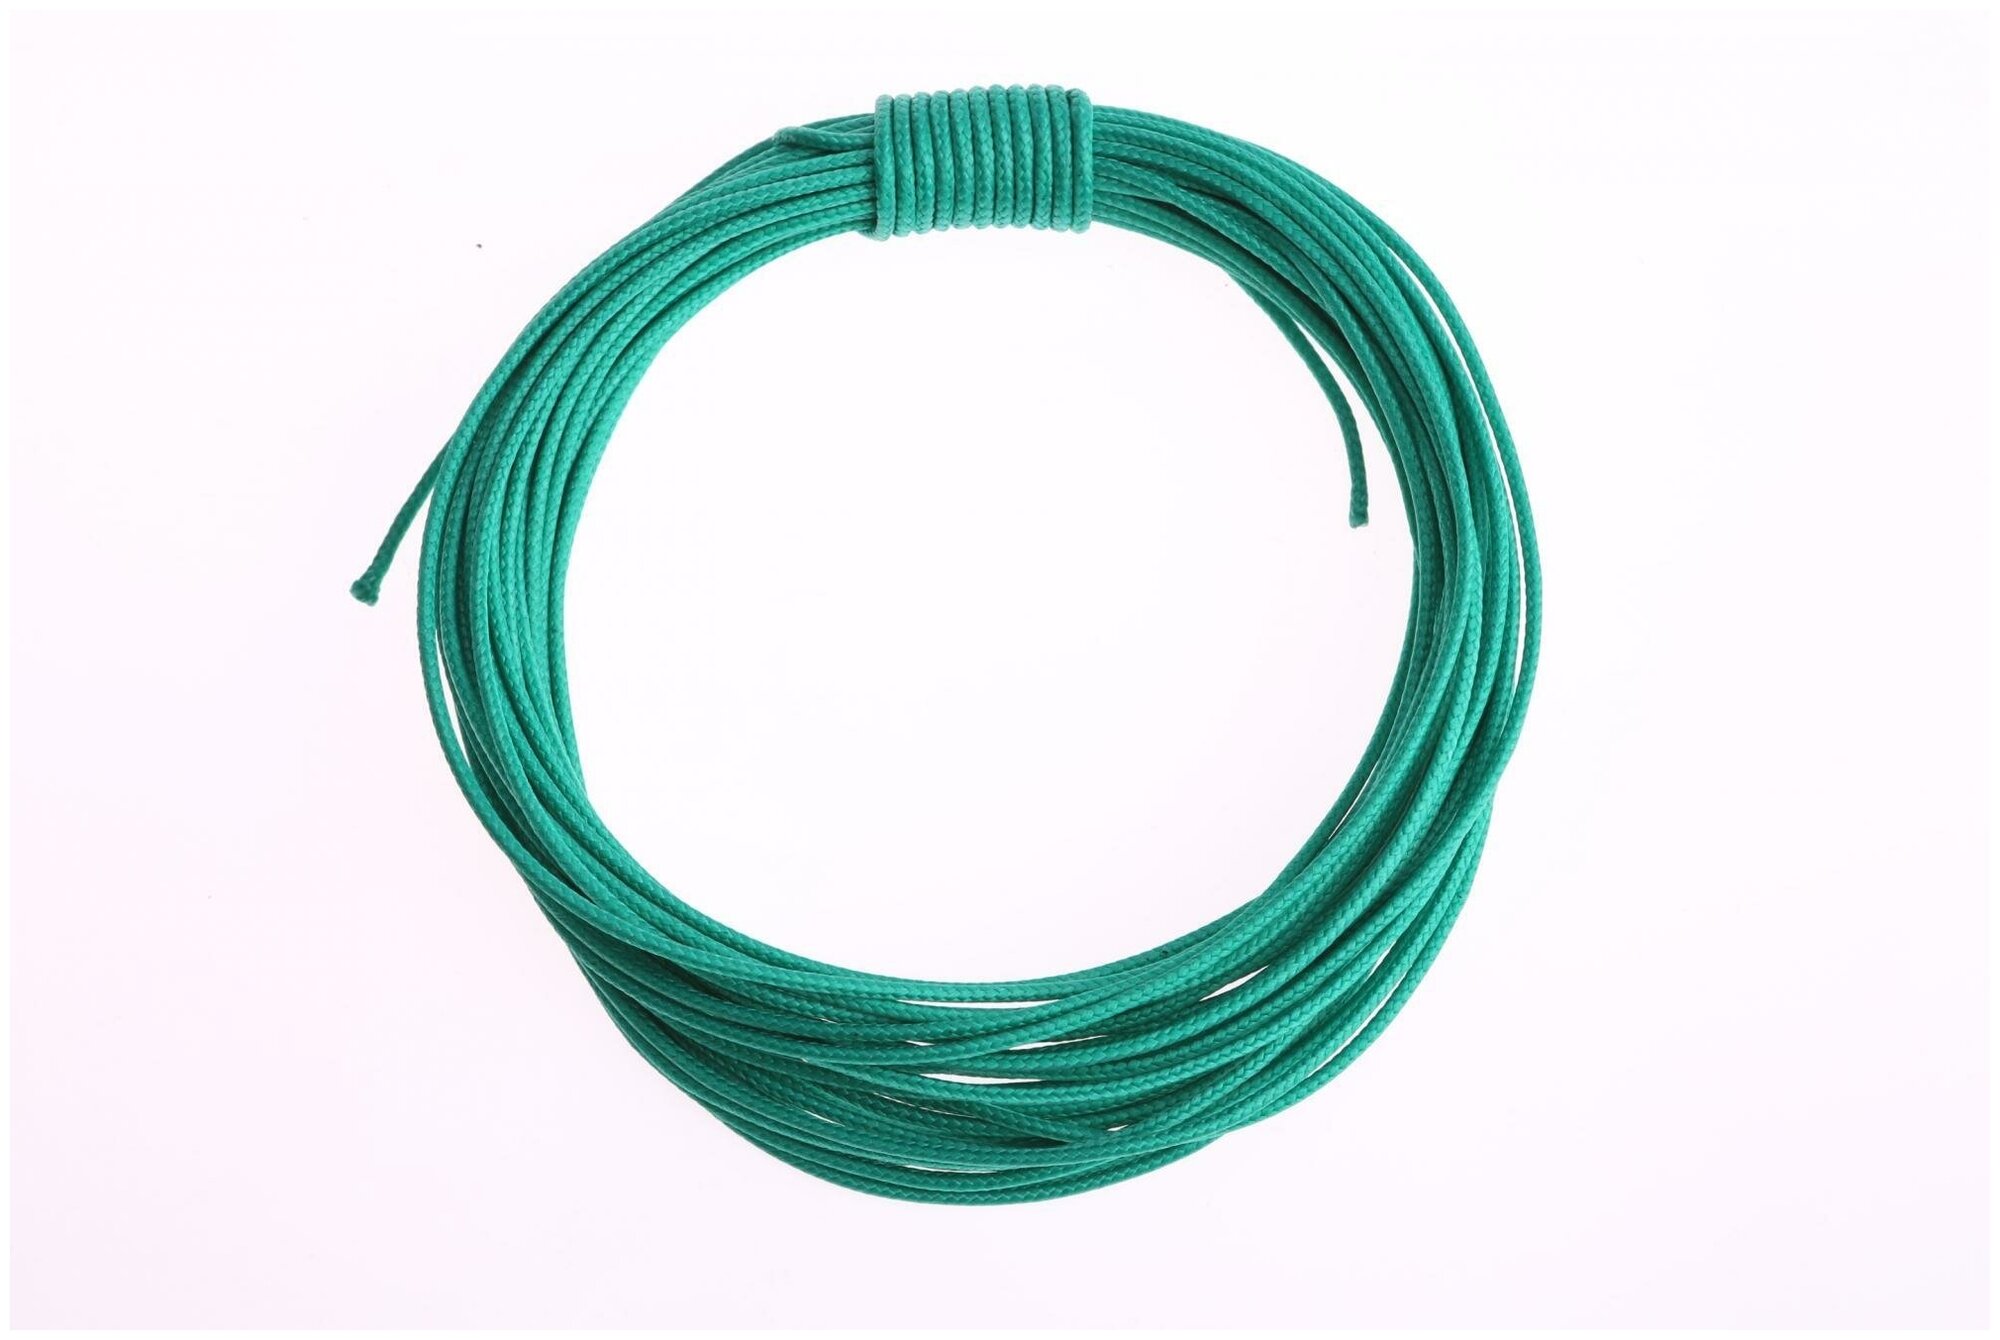 Шнур плетеный капроновый высокопрочный Dyneema зеленый 1.5 мм на разрыв 150 кг длина 5 метров.